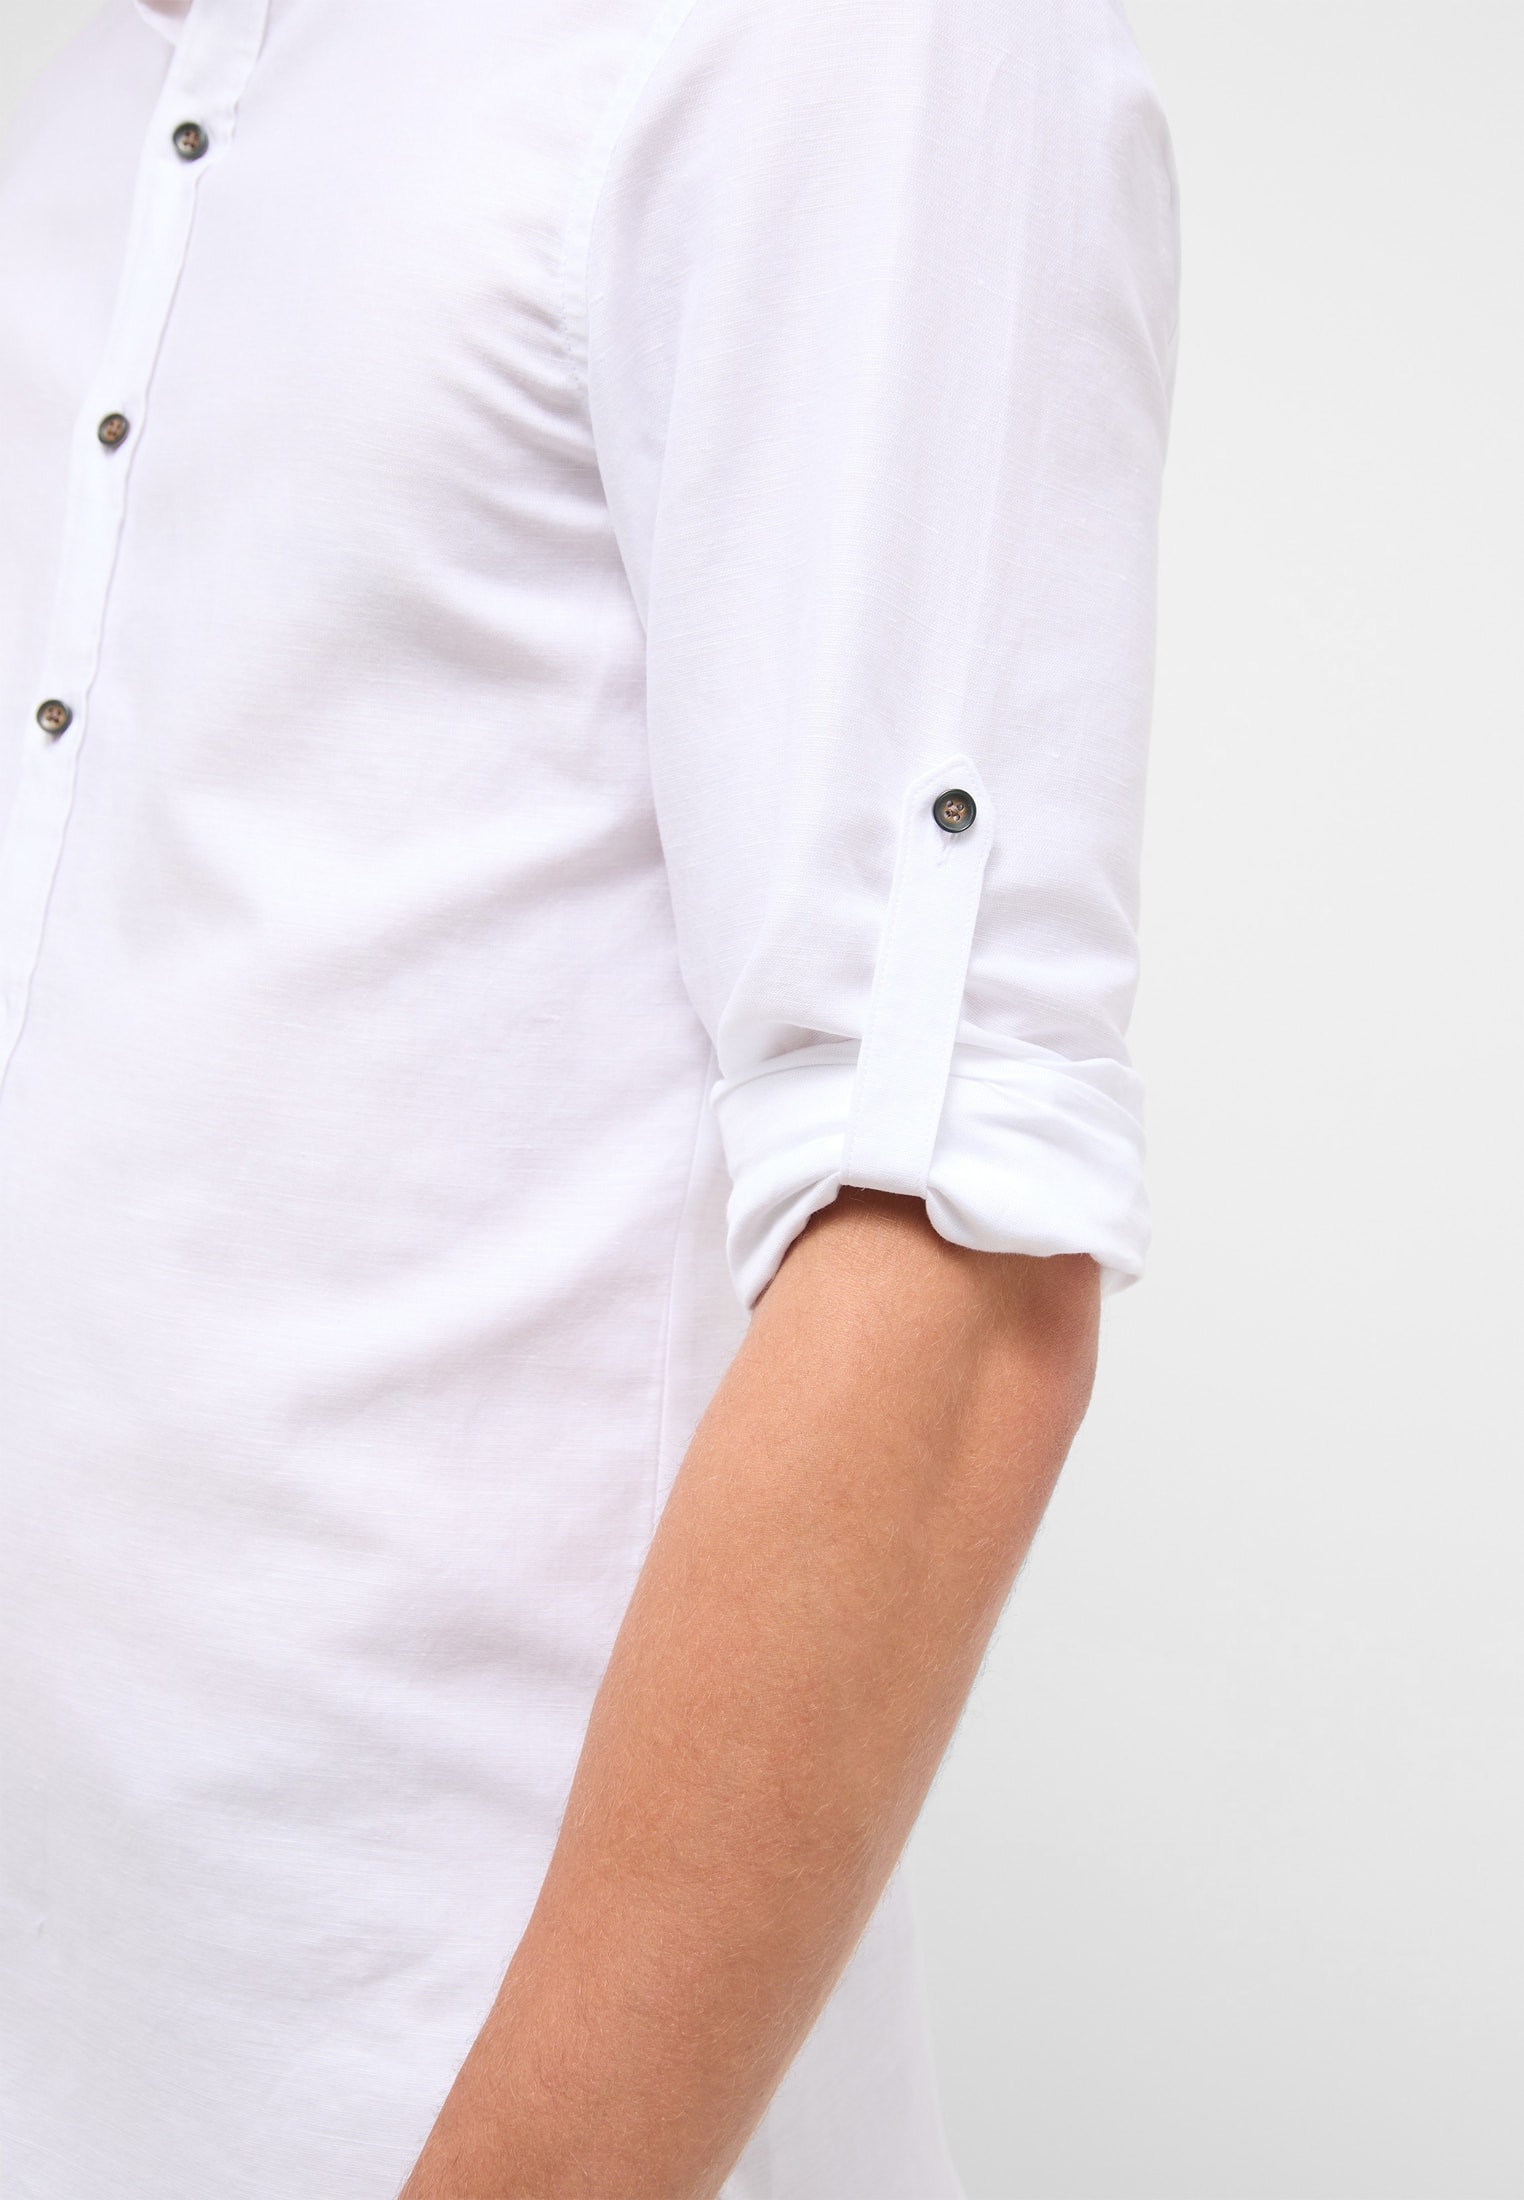 SLIM FIT Linen Shirt | 1SH12593-00-01-40-1/1 | Langarm in weiß | weiß unifarben | 40